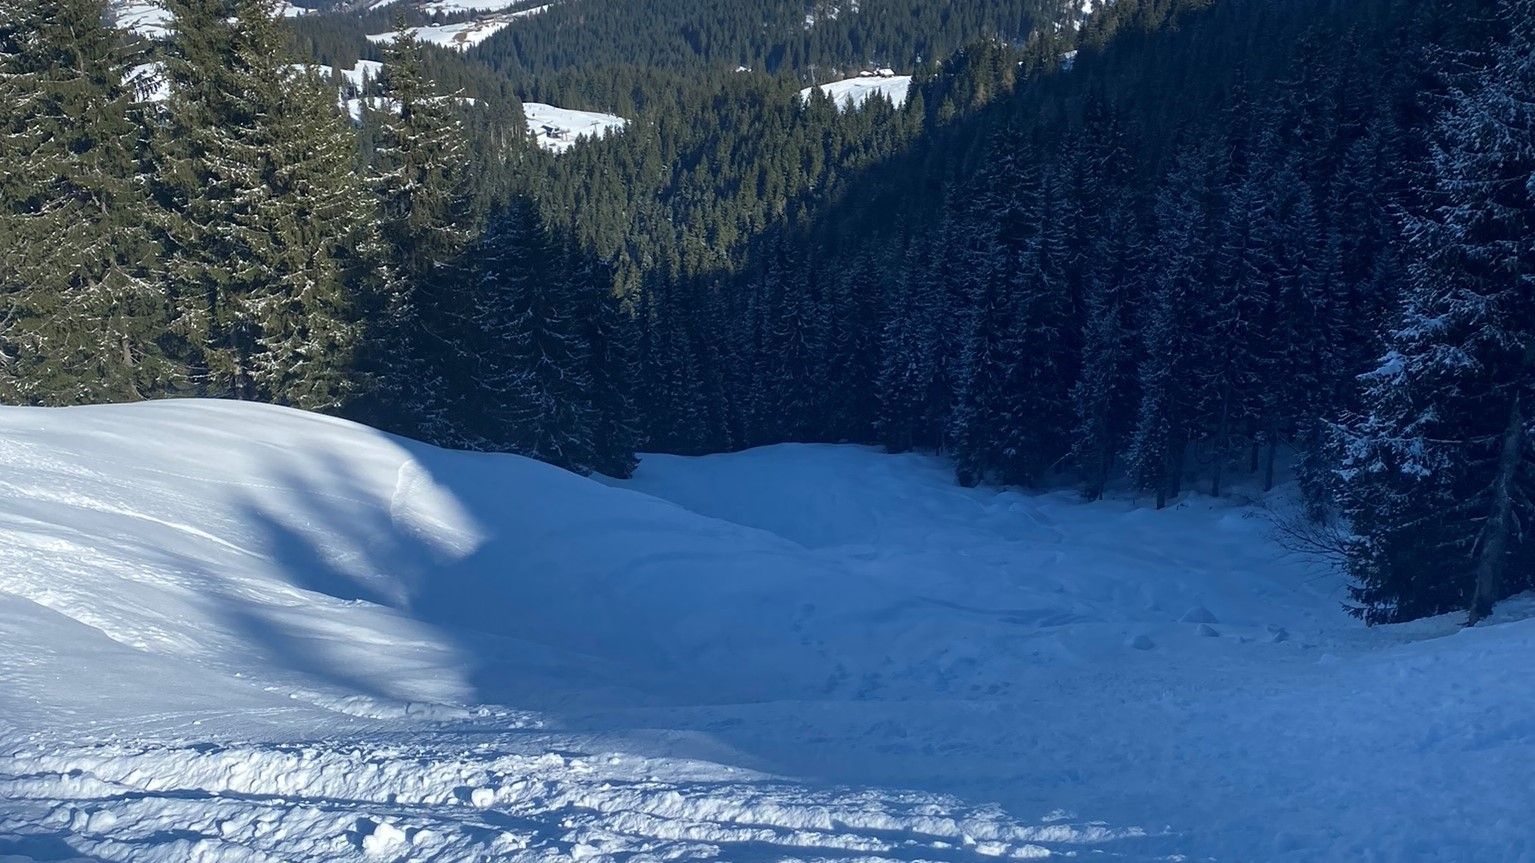 Bajando por una solitaria skiroute con muy buenas condiciones.